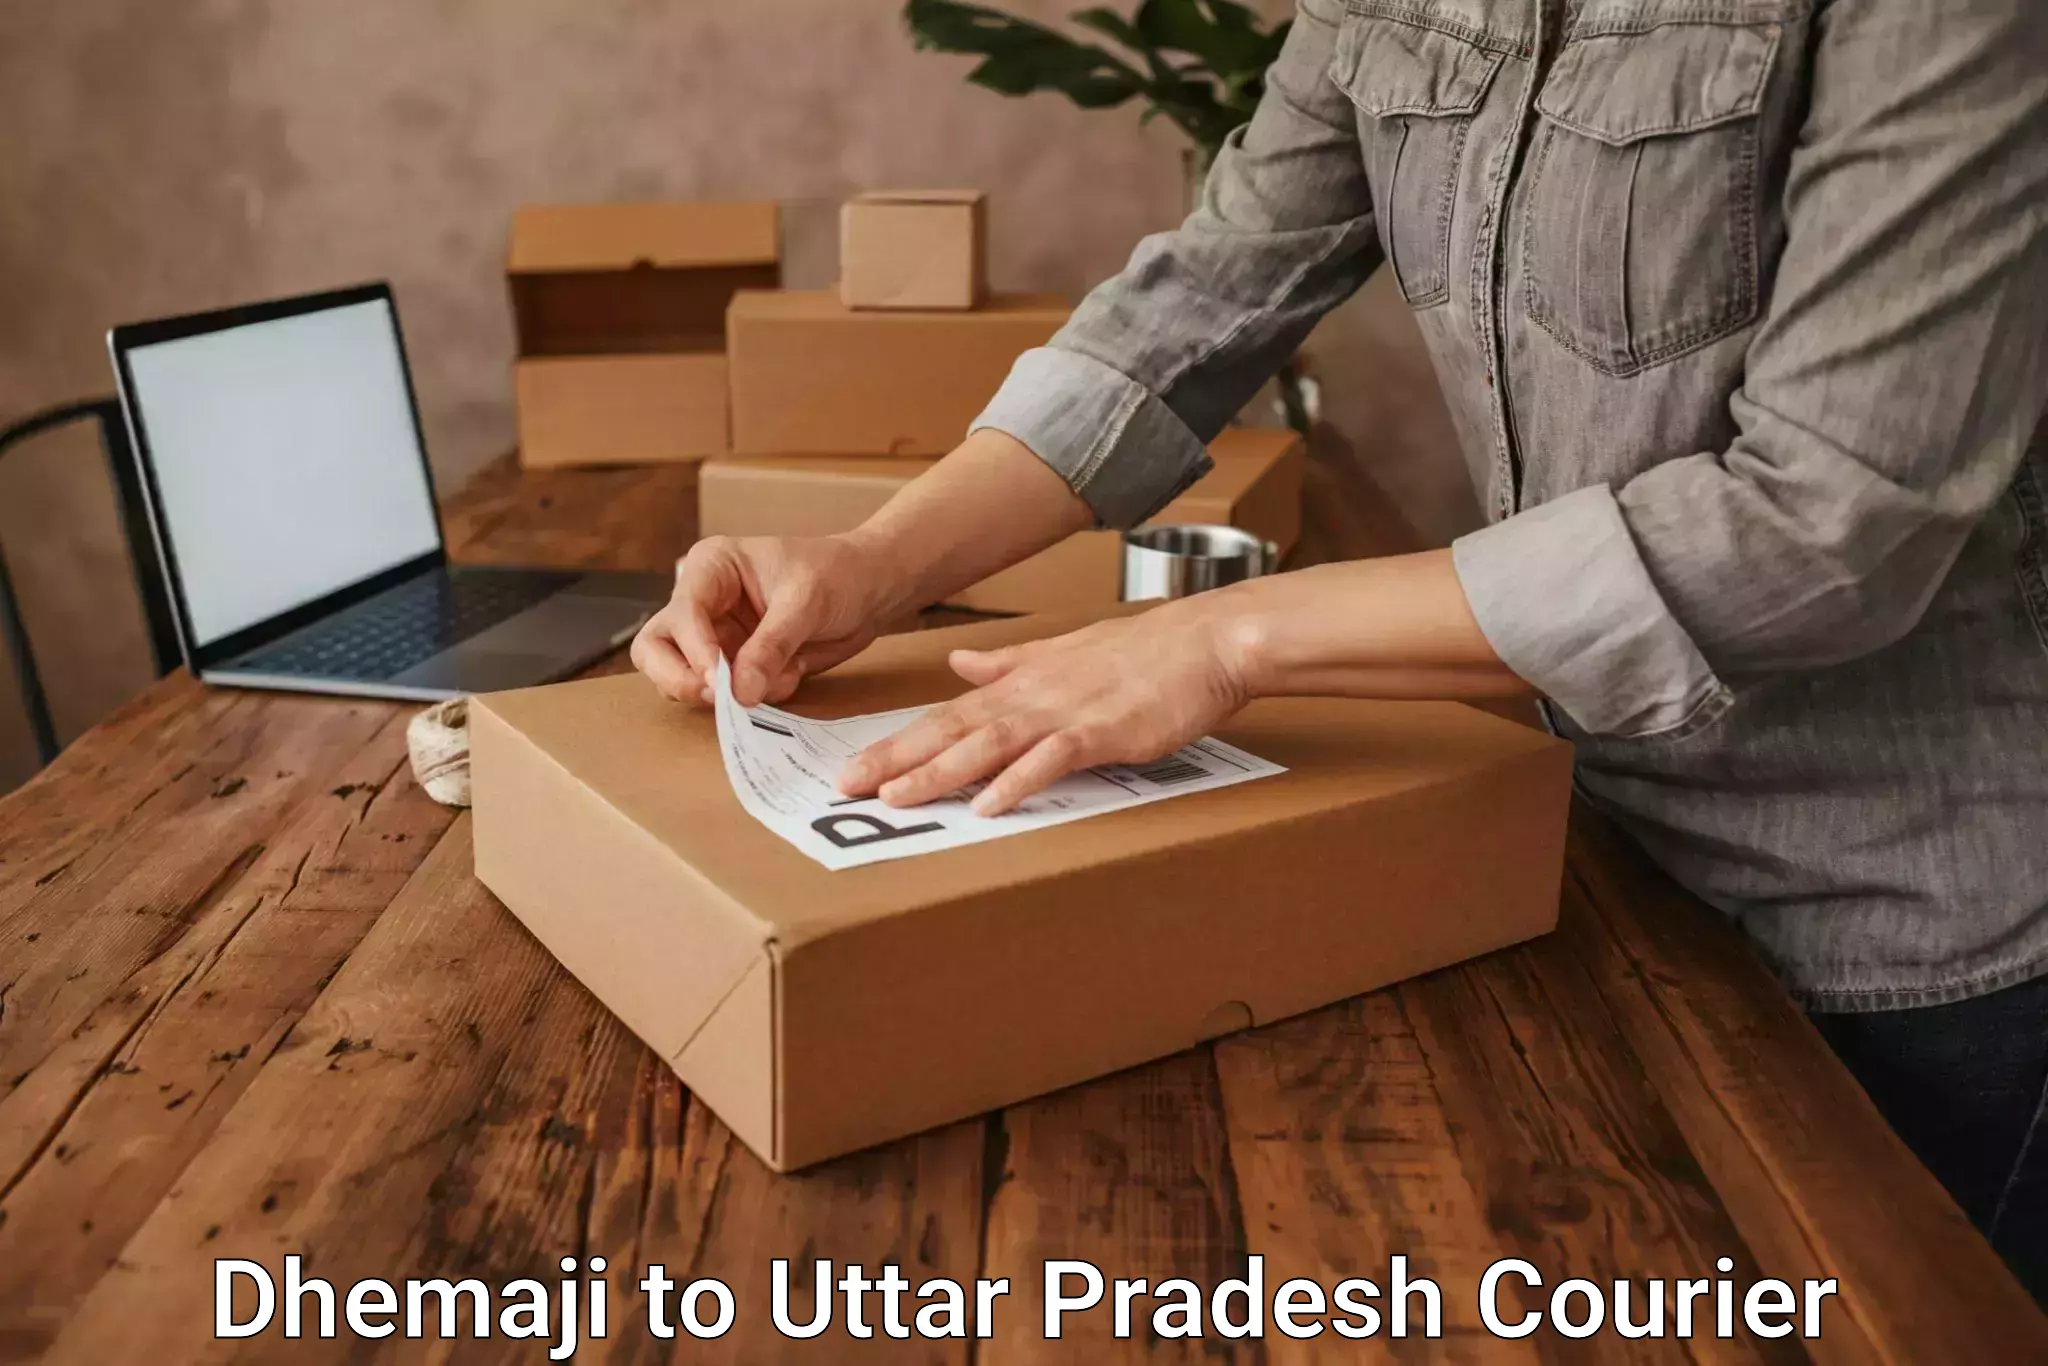 Urban courier service Dhemaji to Sidhauli